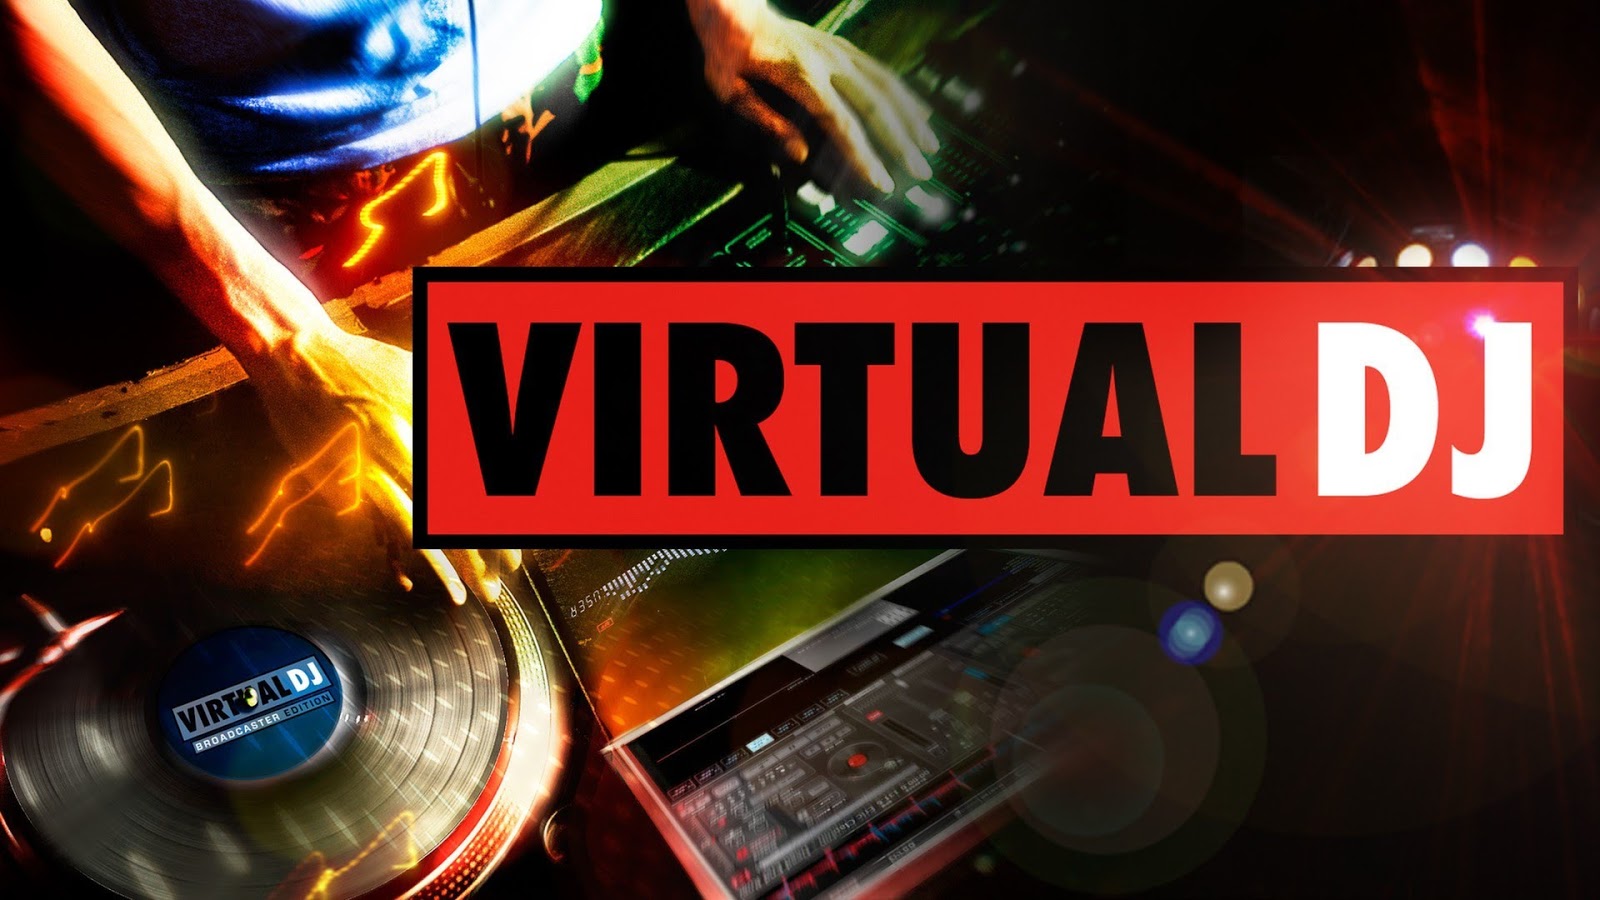 Download efek virtual dj home page